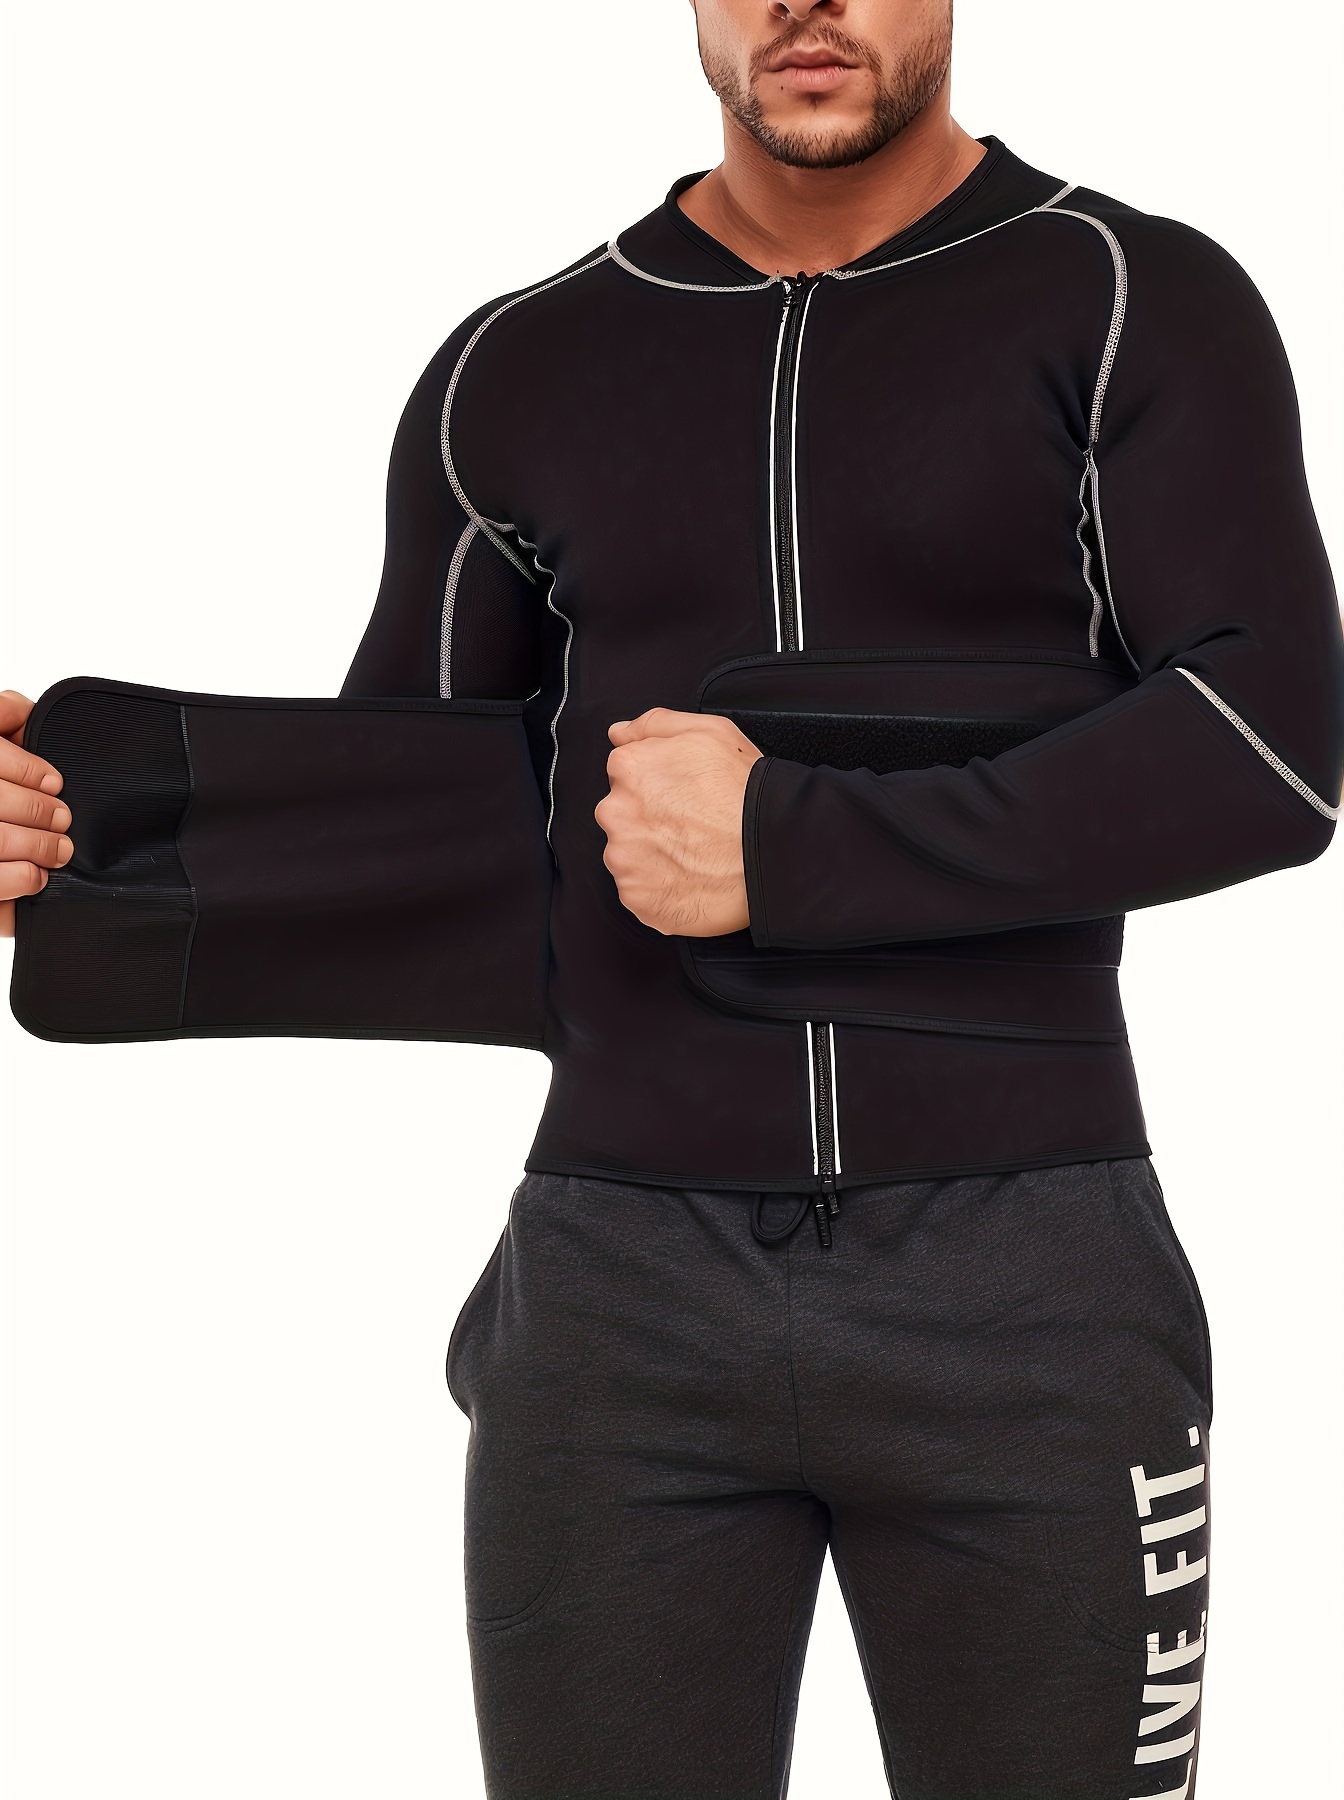 Men Sauna Suit Weight Loss Jacket Waist Trainer Hot Sweat Shirt Workout  Tank Tops Zipper Long Sleeve Body Shaper